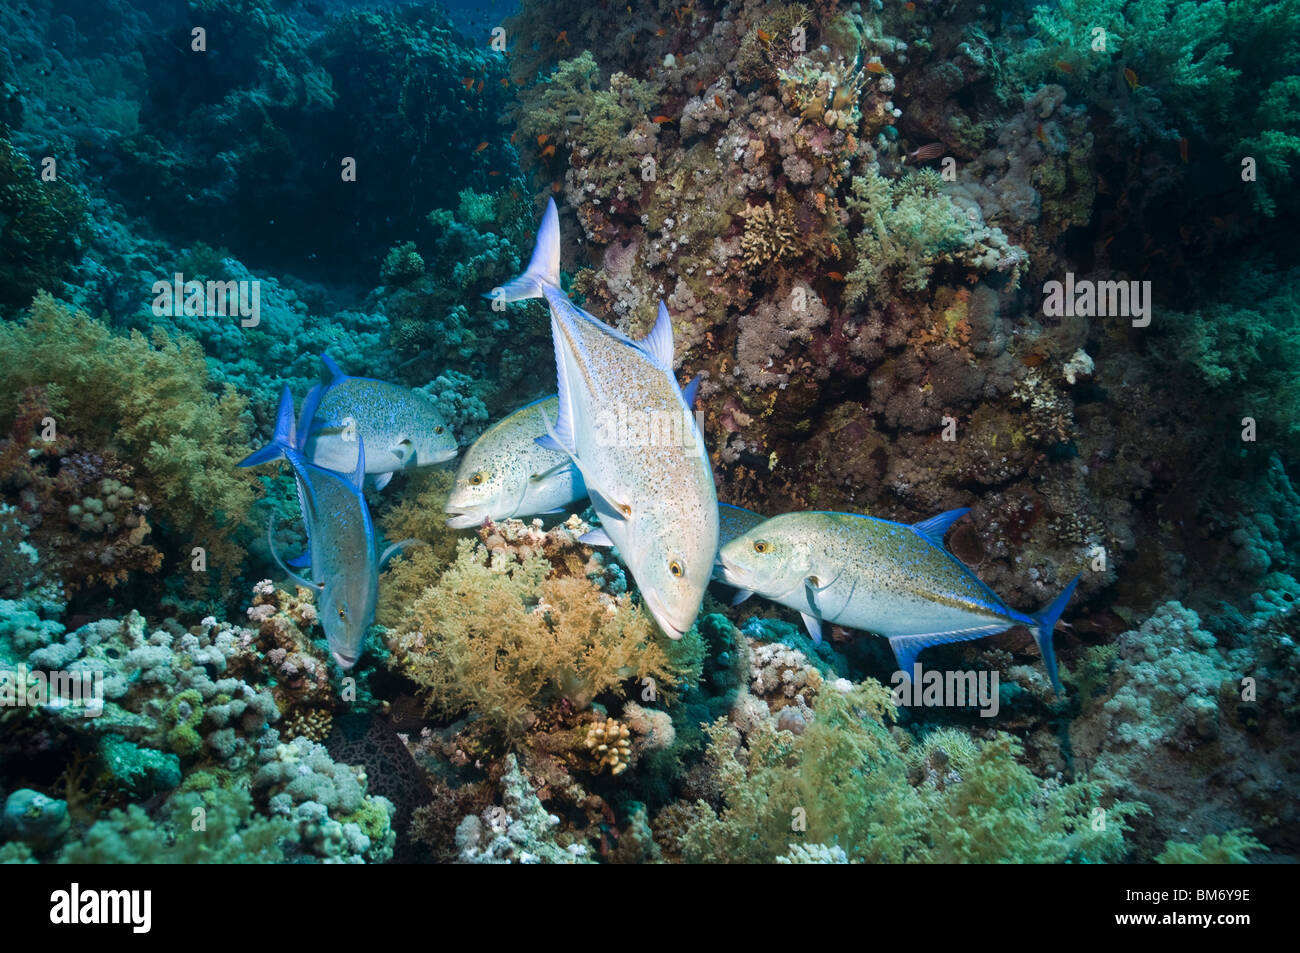 El atún rojo de jureles (Caranx melampygus) caza a lo largo de arrecifes de coral. Egipto, el Mar Rojo. Foto de stock